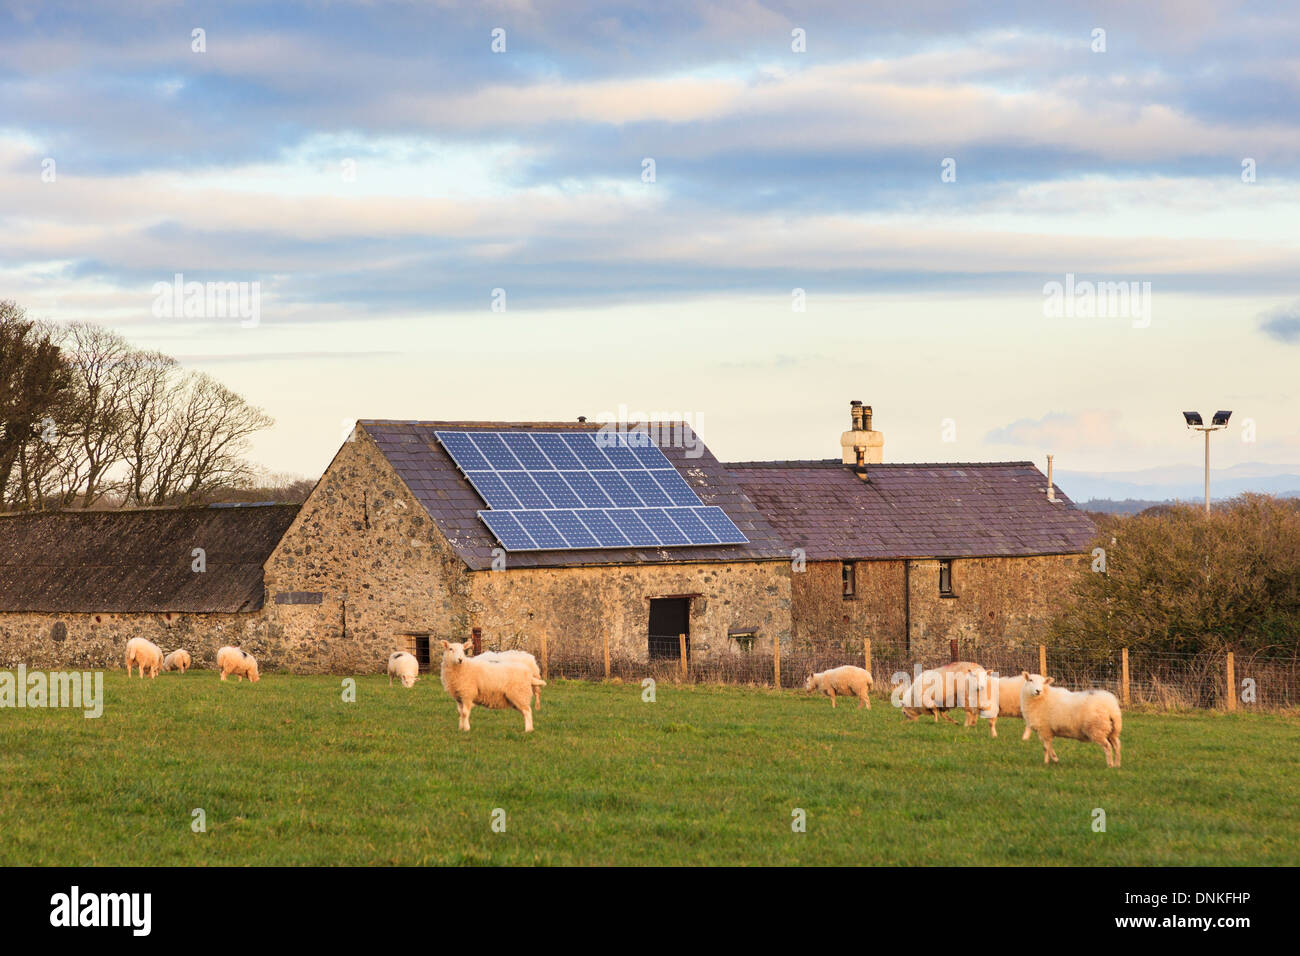 Des panneaux solaires sur le toit d'une vieille grange sur une ferme de moutons gallois rurales d'Anglesey, dans le Nord du Pays de Galles, Royaume-Uni, Angleterre Banque D'Images